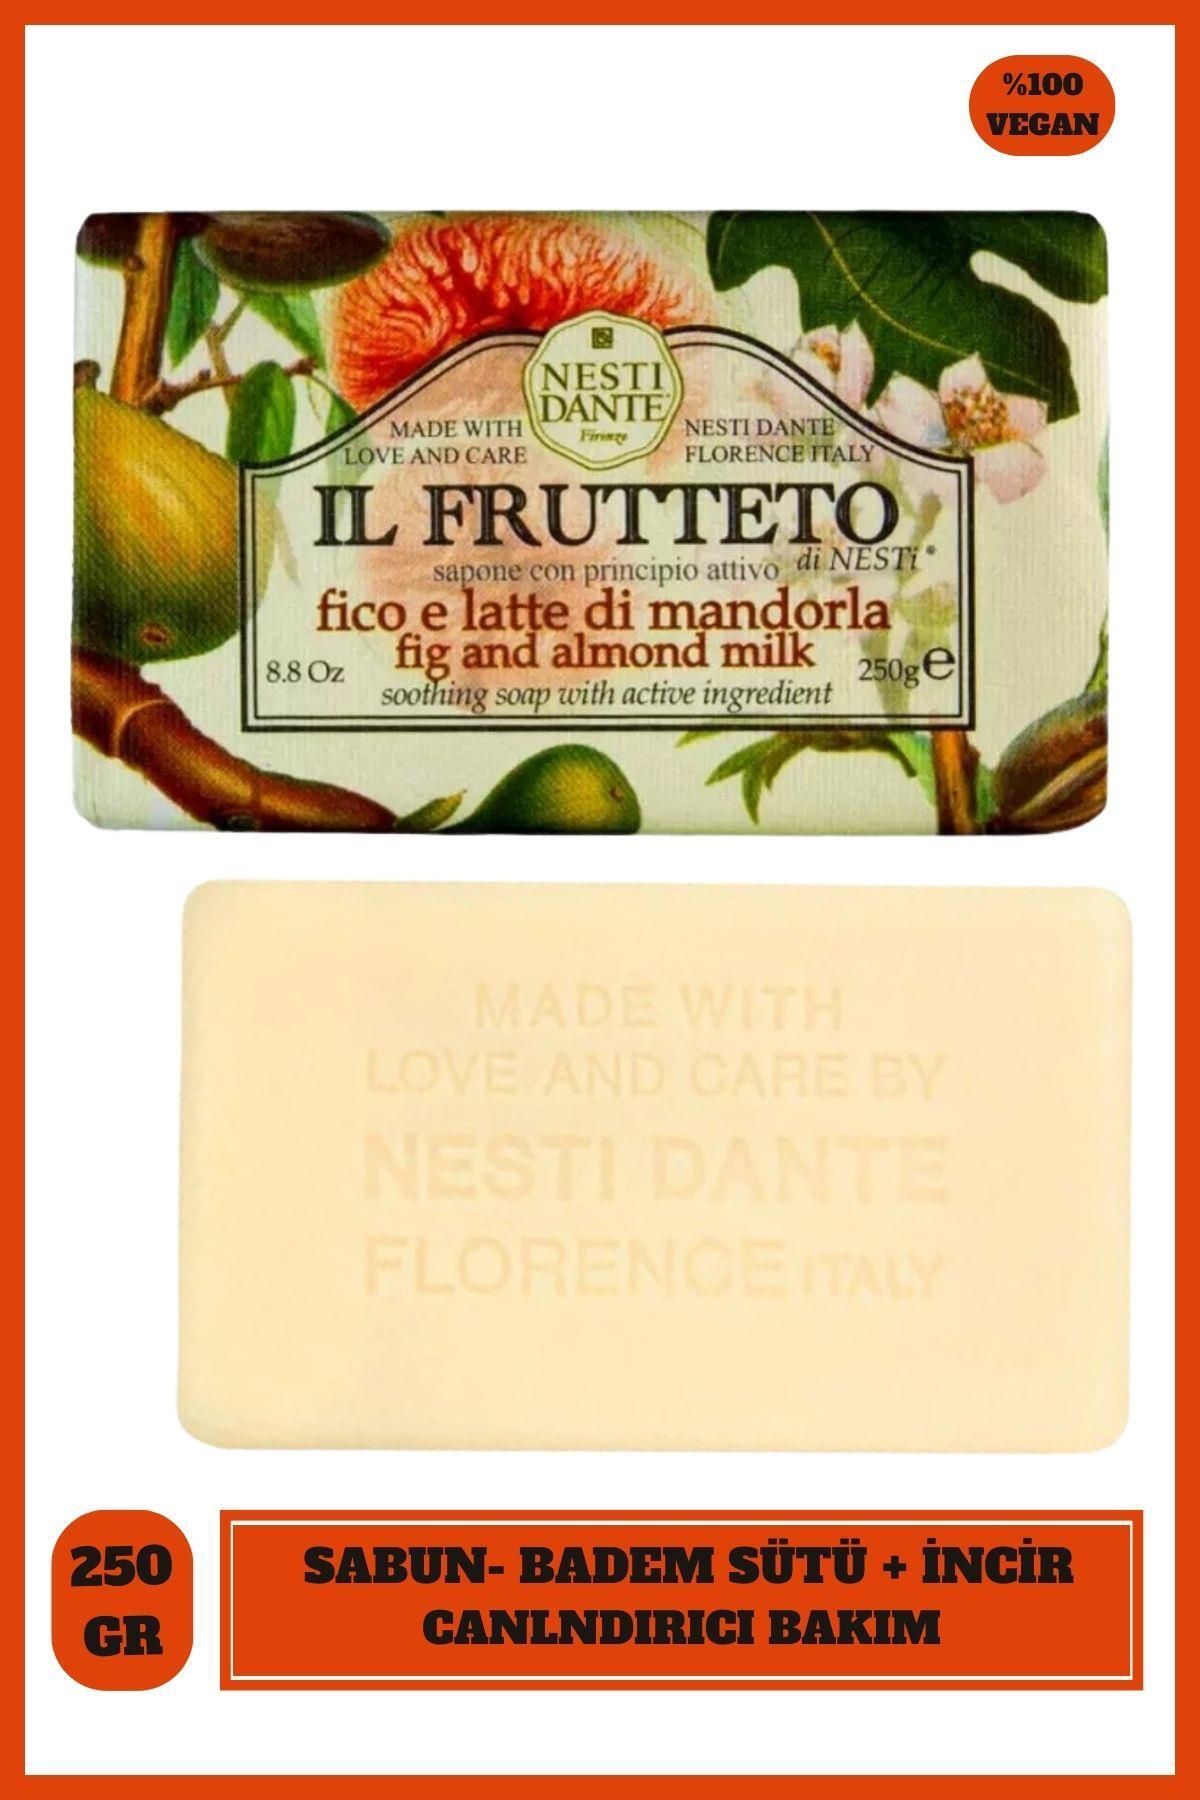 Nesti Dante Sabun Il Frutteto İncir ve Badem Sütü Vegan Bakım 250 g